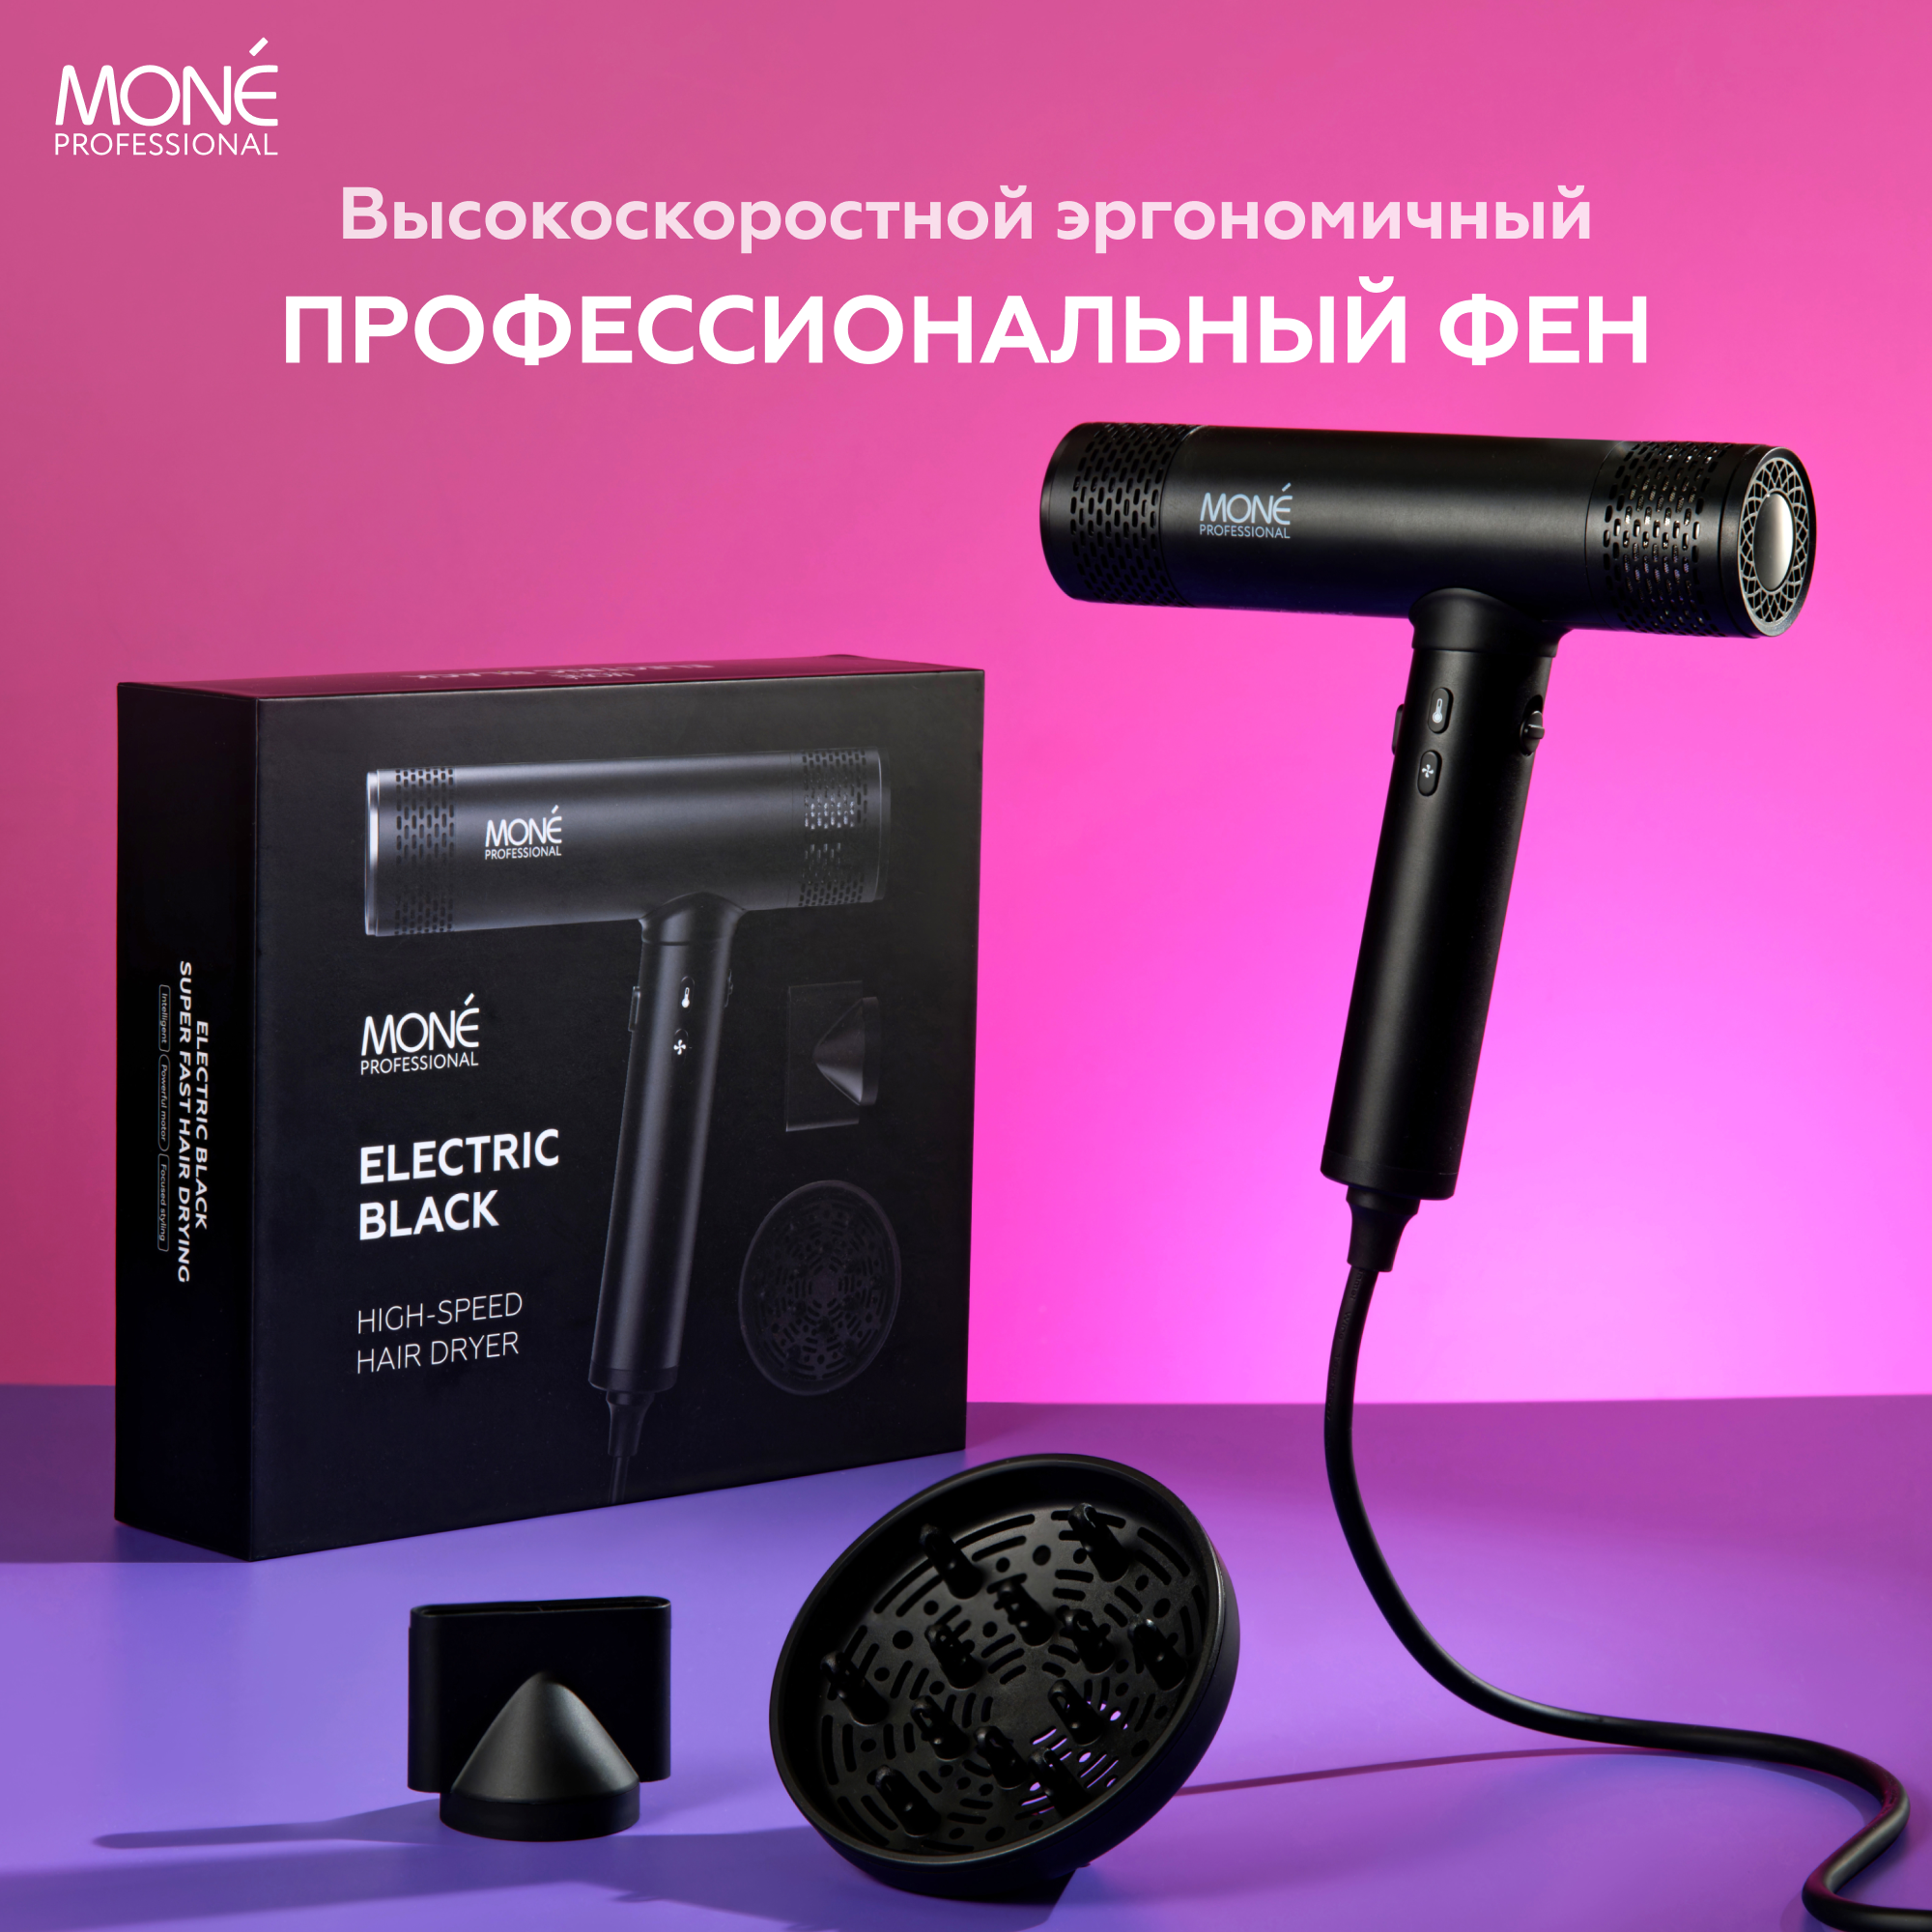 Фен для волос профессиональный черный ELECTRIC BLACK HIGH-SPEED HAIR DRYER